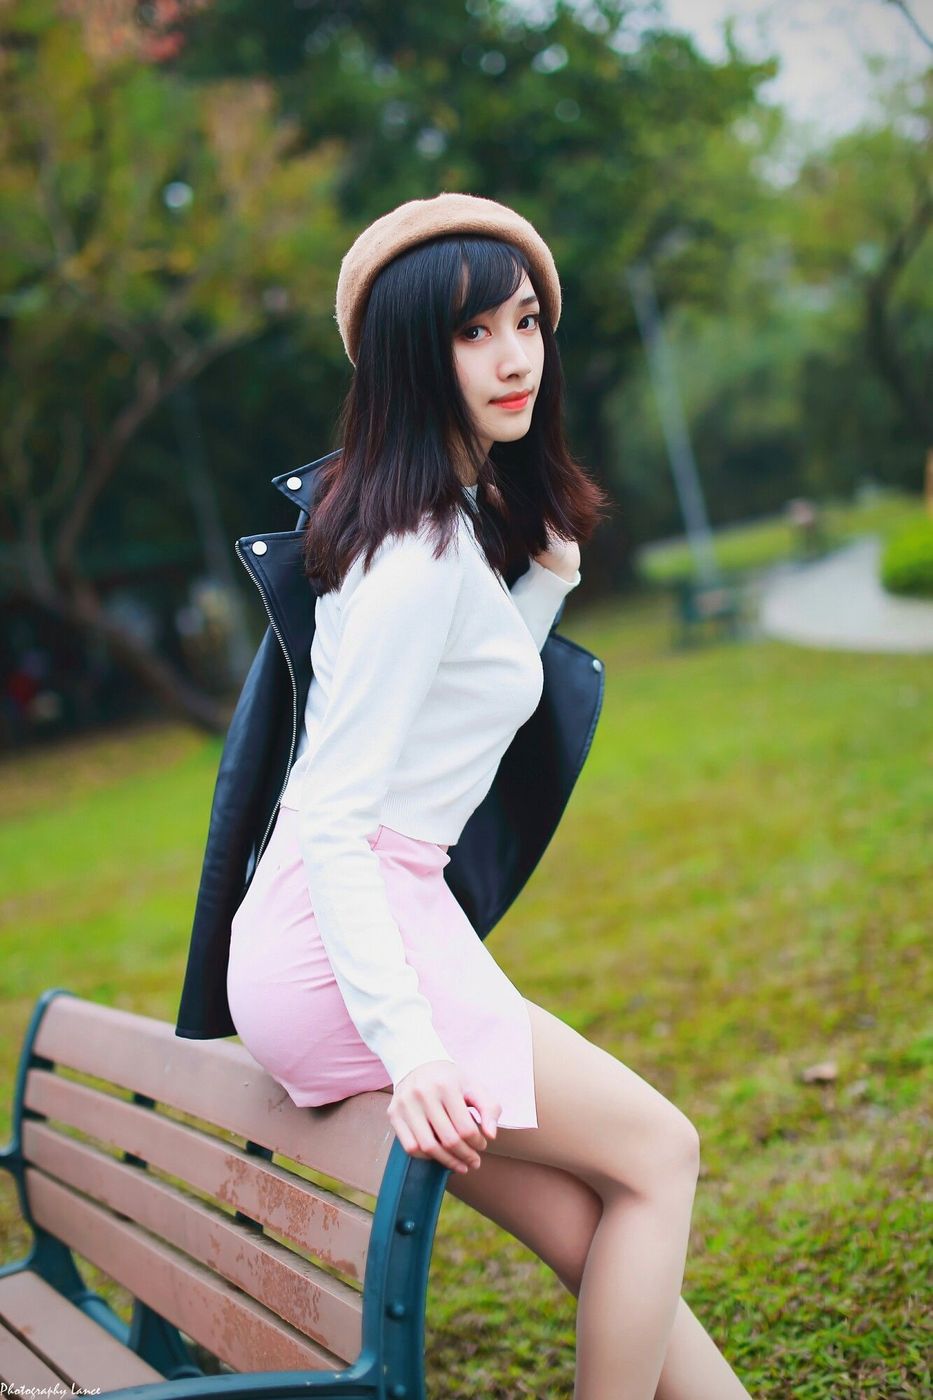 台湾美女嫩模段璟乐白皙爆乳修长美腿大安森林公园写真